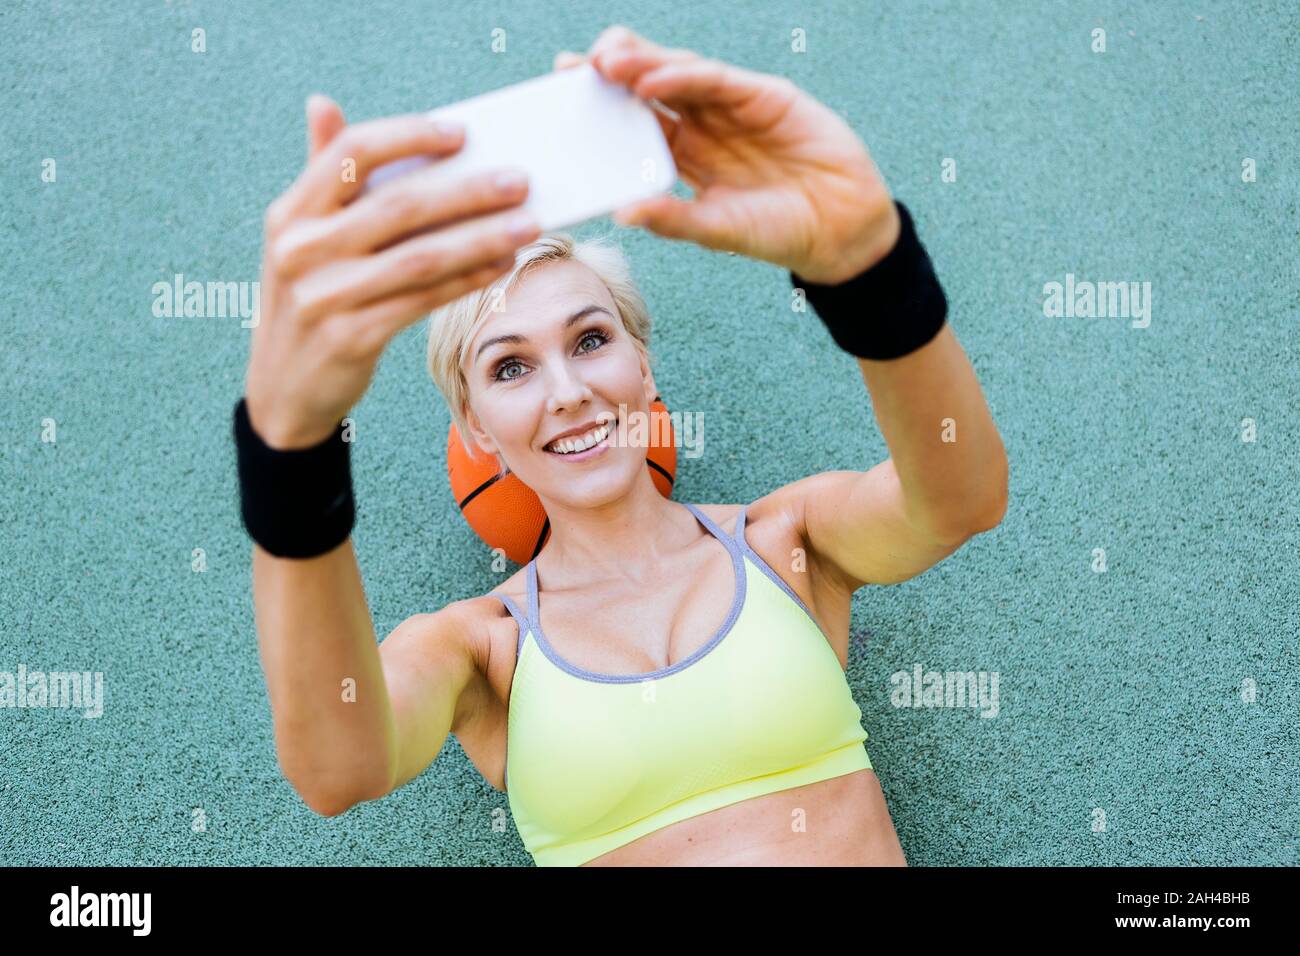 Libre sur le basket-ball et en tenant un selfies Banque D'Images